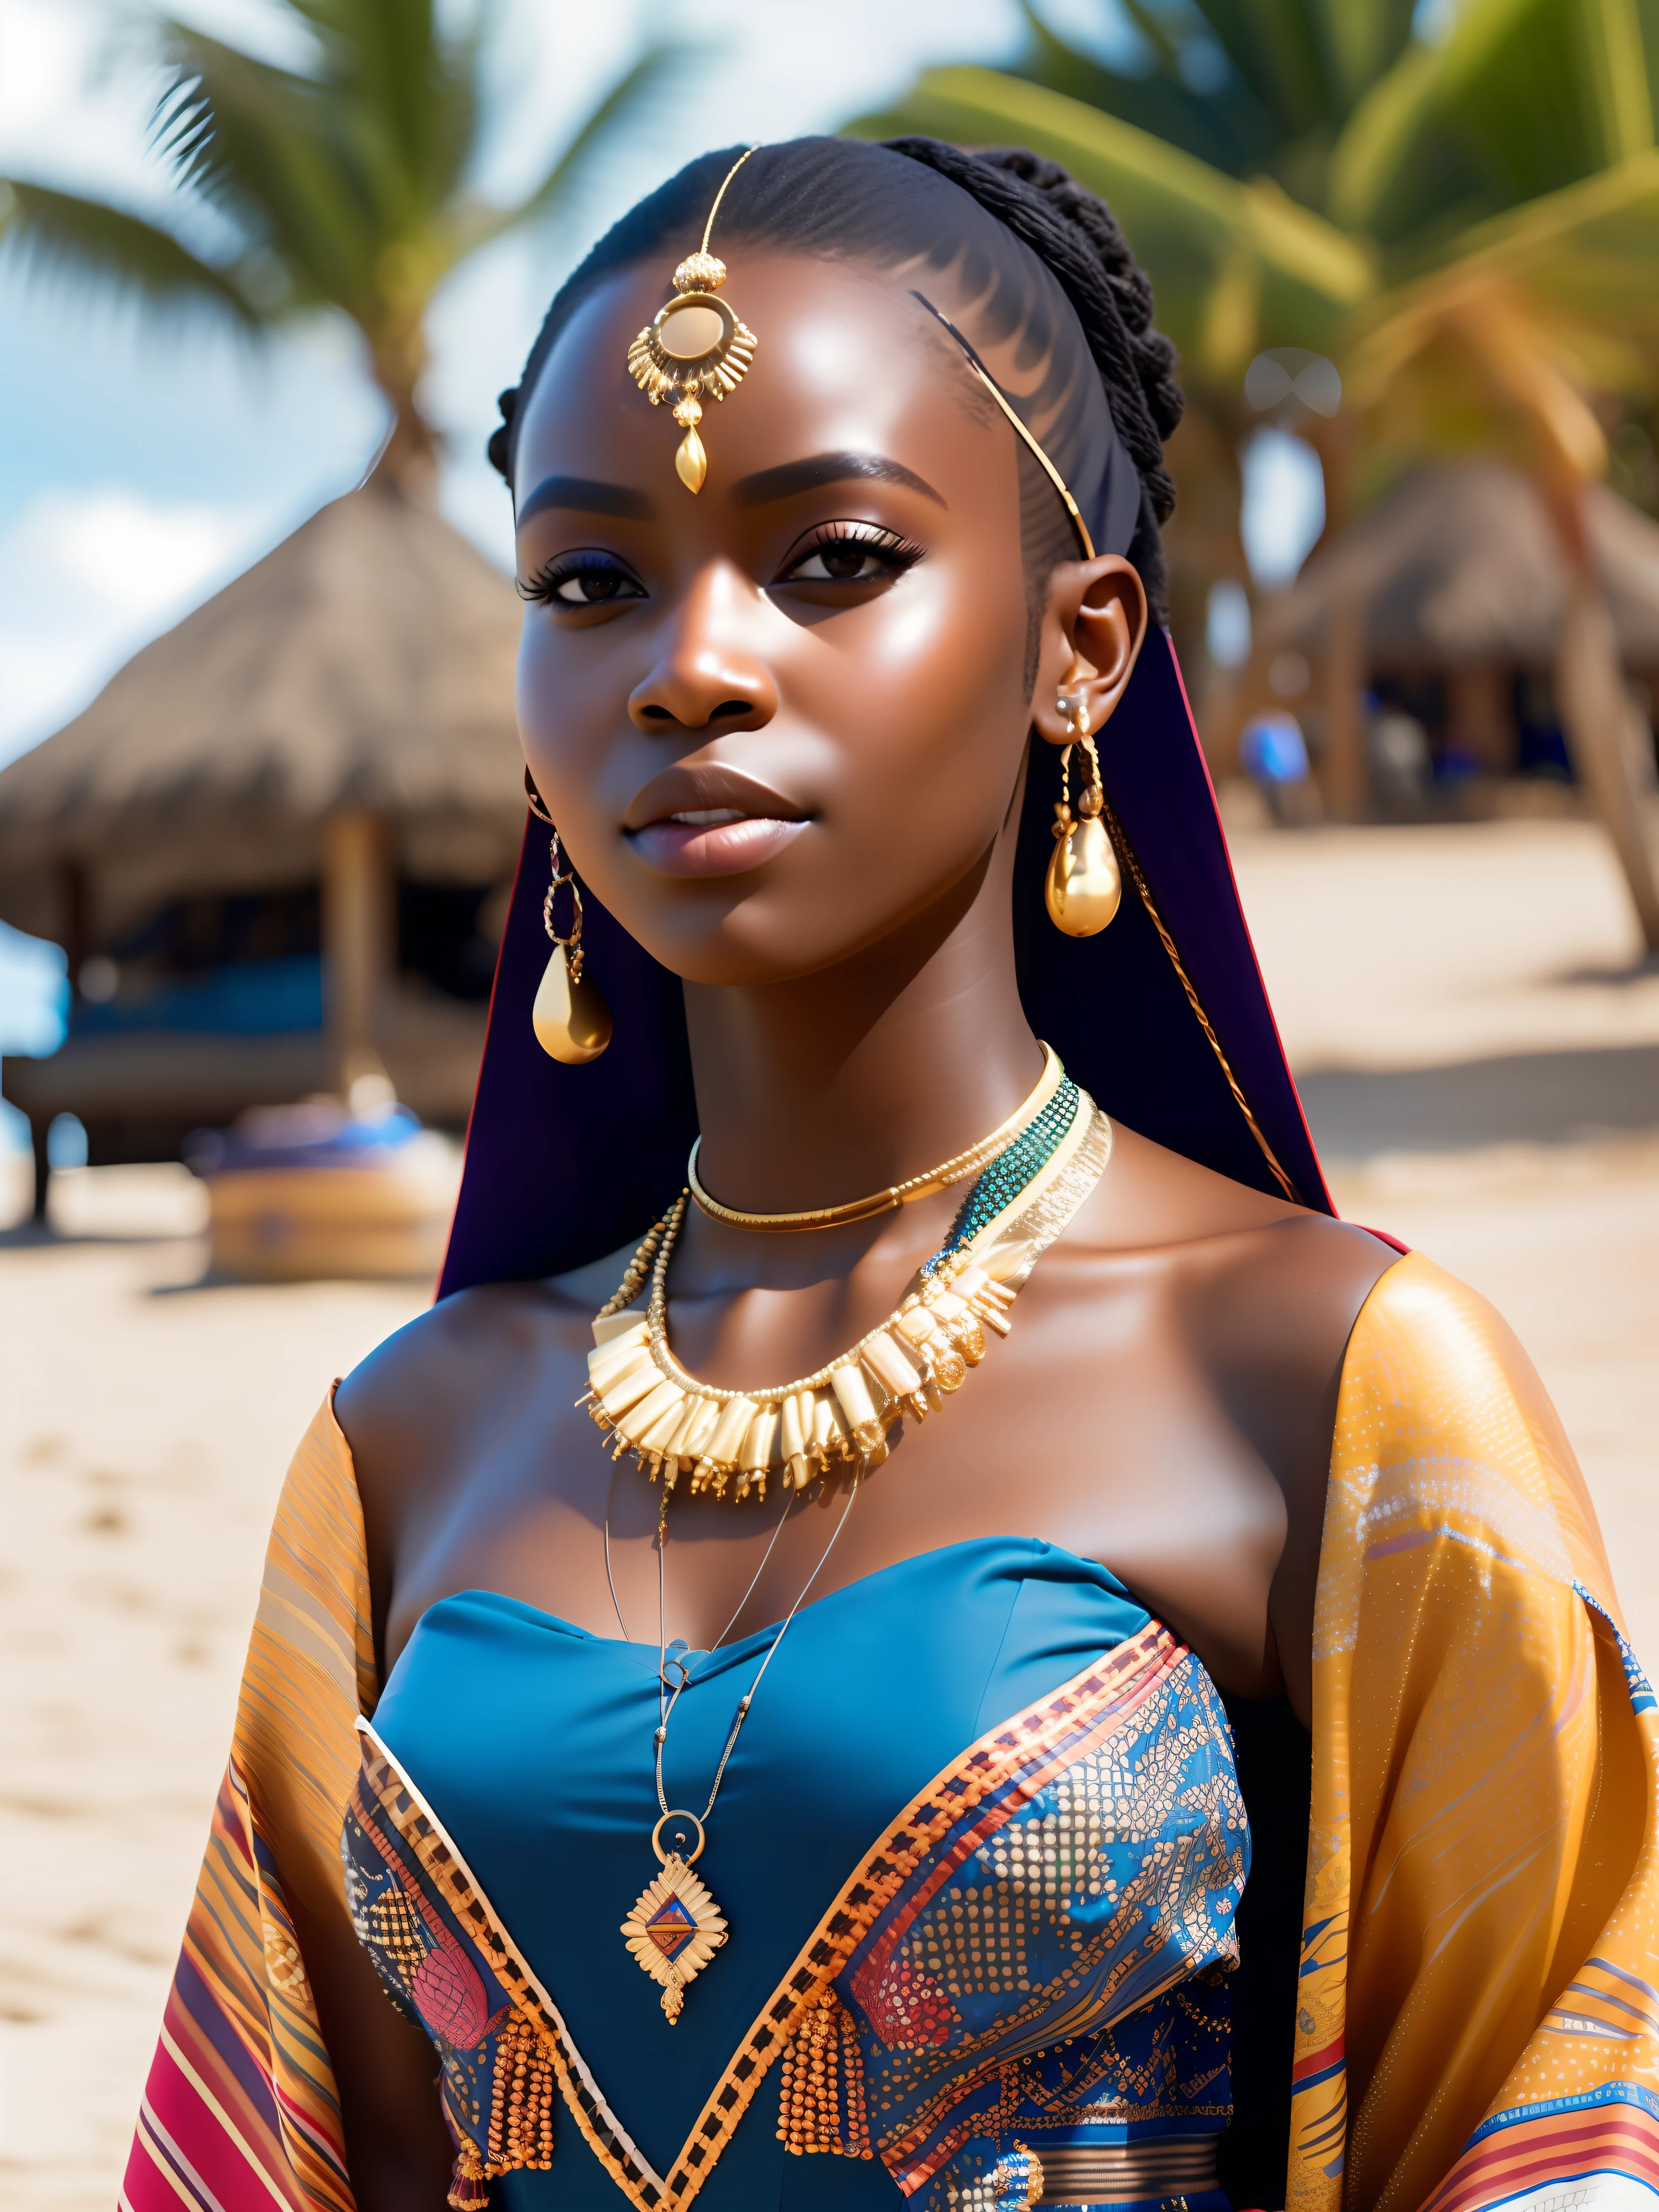 verdammt_Science-Fiction, verdammt_Science-Fiction_v2, Porträt einer sehr schönen jungen Afrikanerin vor einem Strand, reiche bunte Kleidung, goldener afrikanischer Schmuck, Nahaufnahme, königliche Pose und Haltung. verdammt_Kino_v2. verdammt_Kino_v2